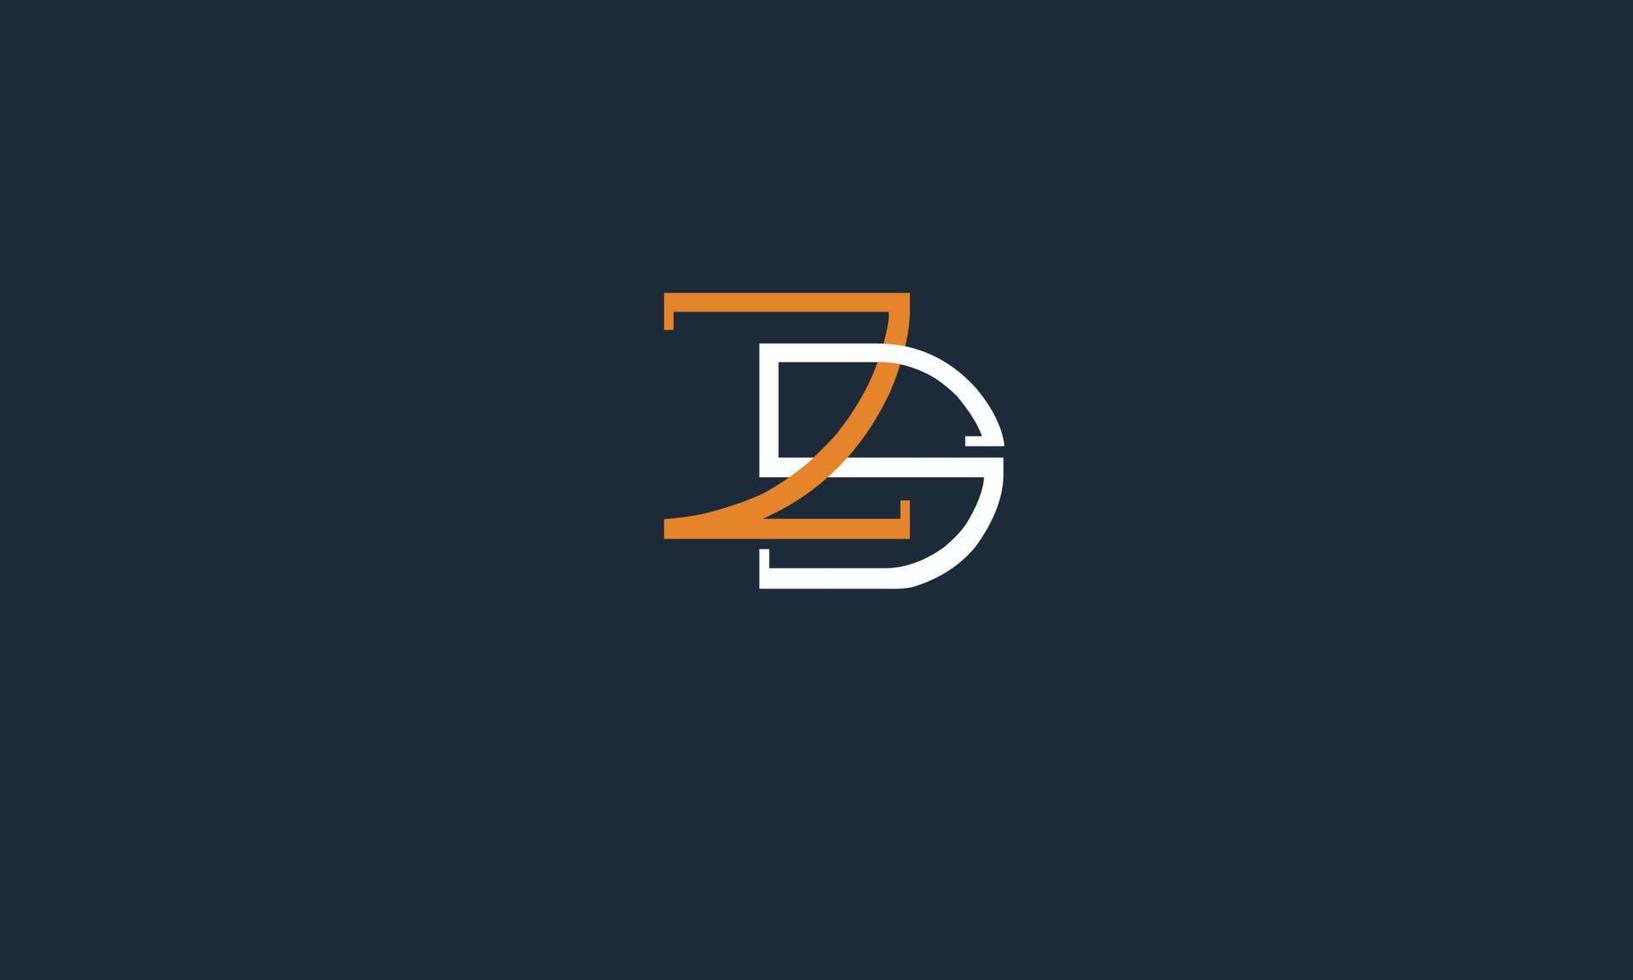 Druckmonogramm-Logo sz, zs, s und z vektor